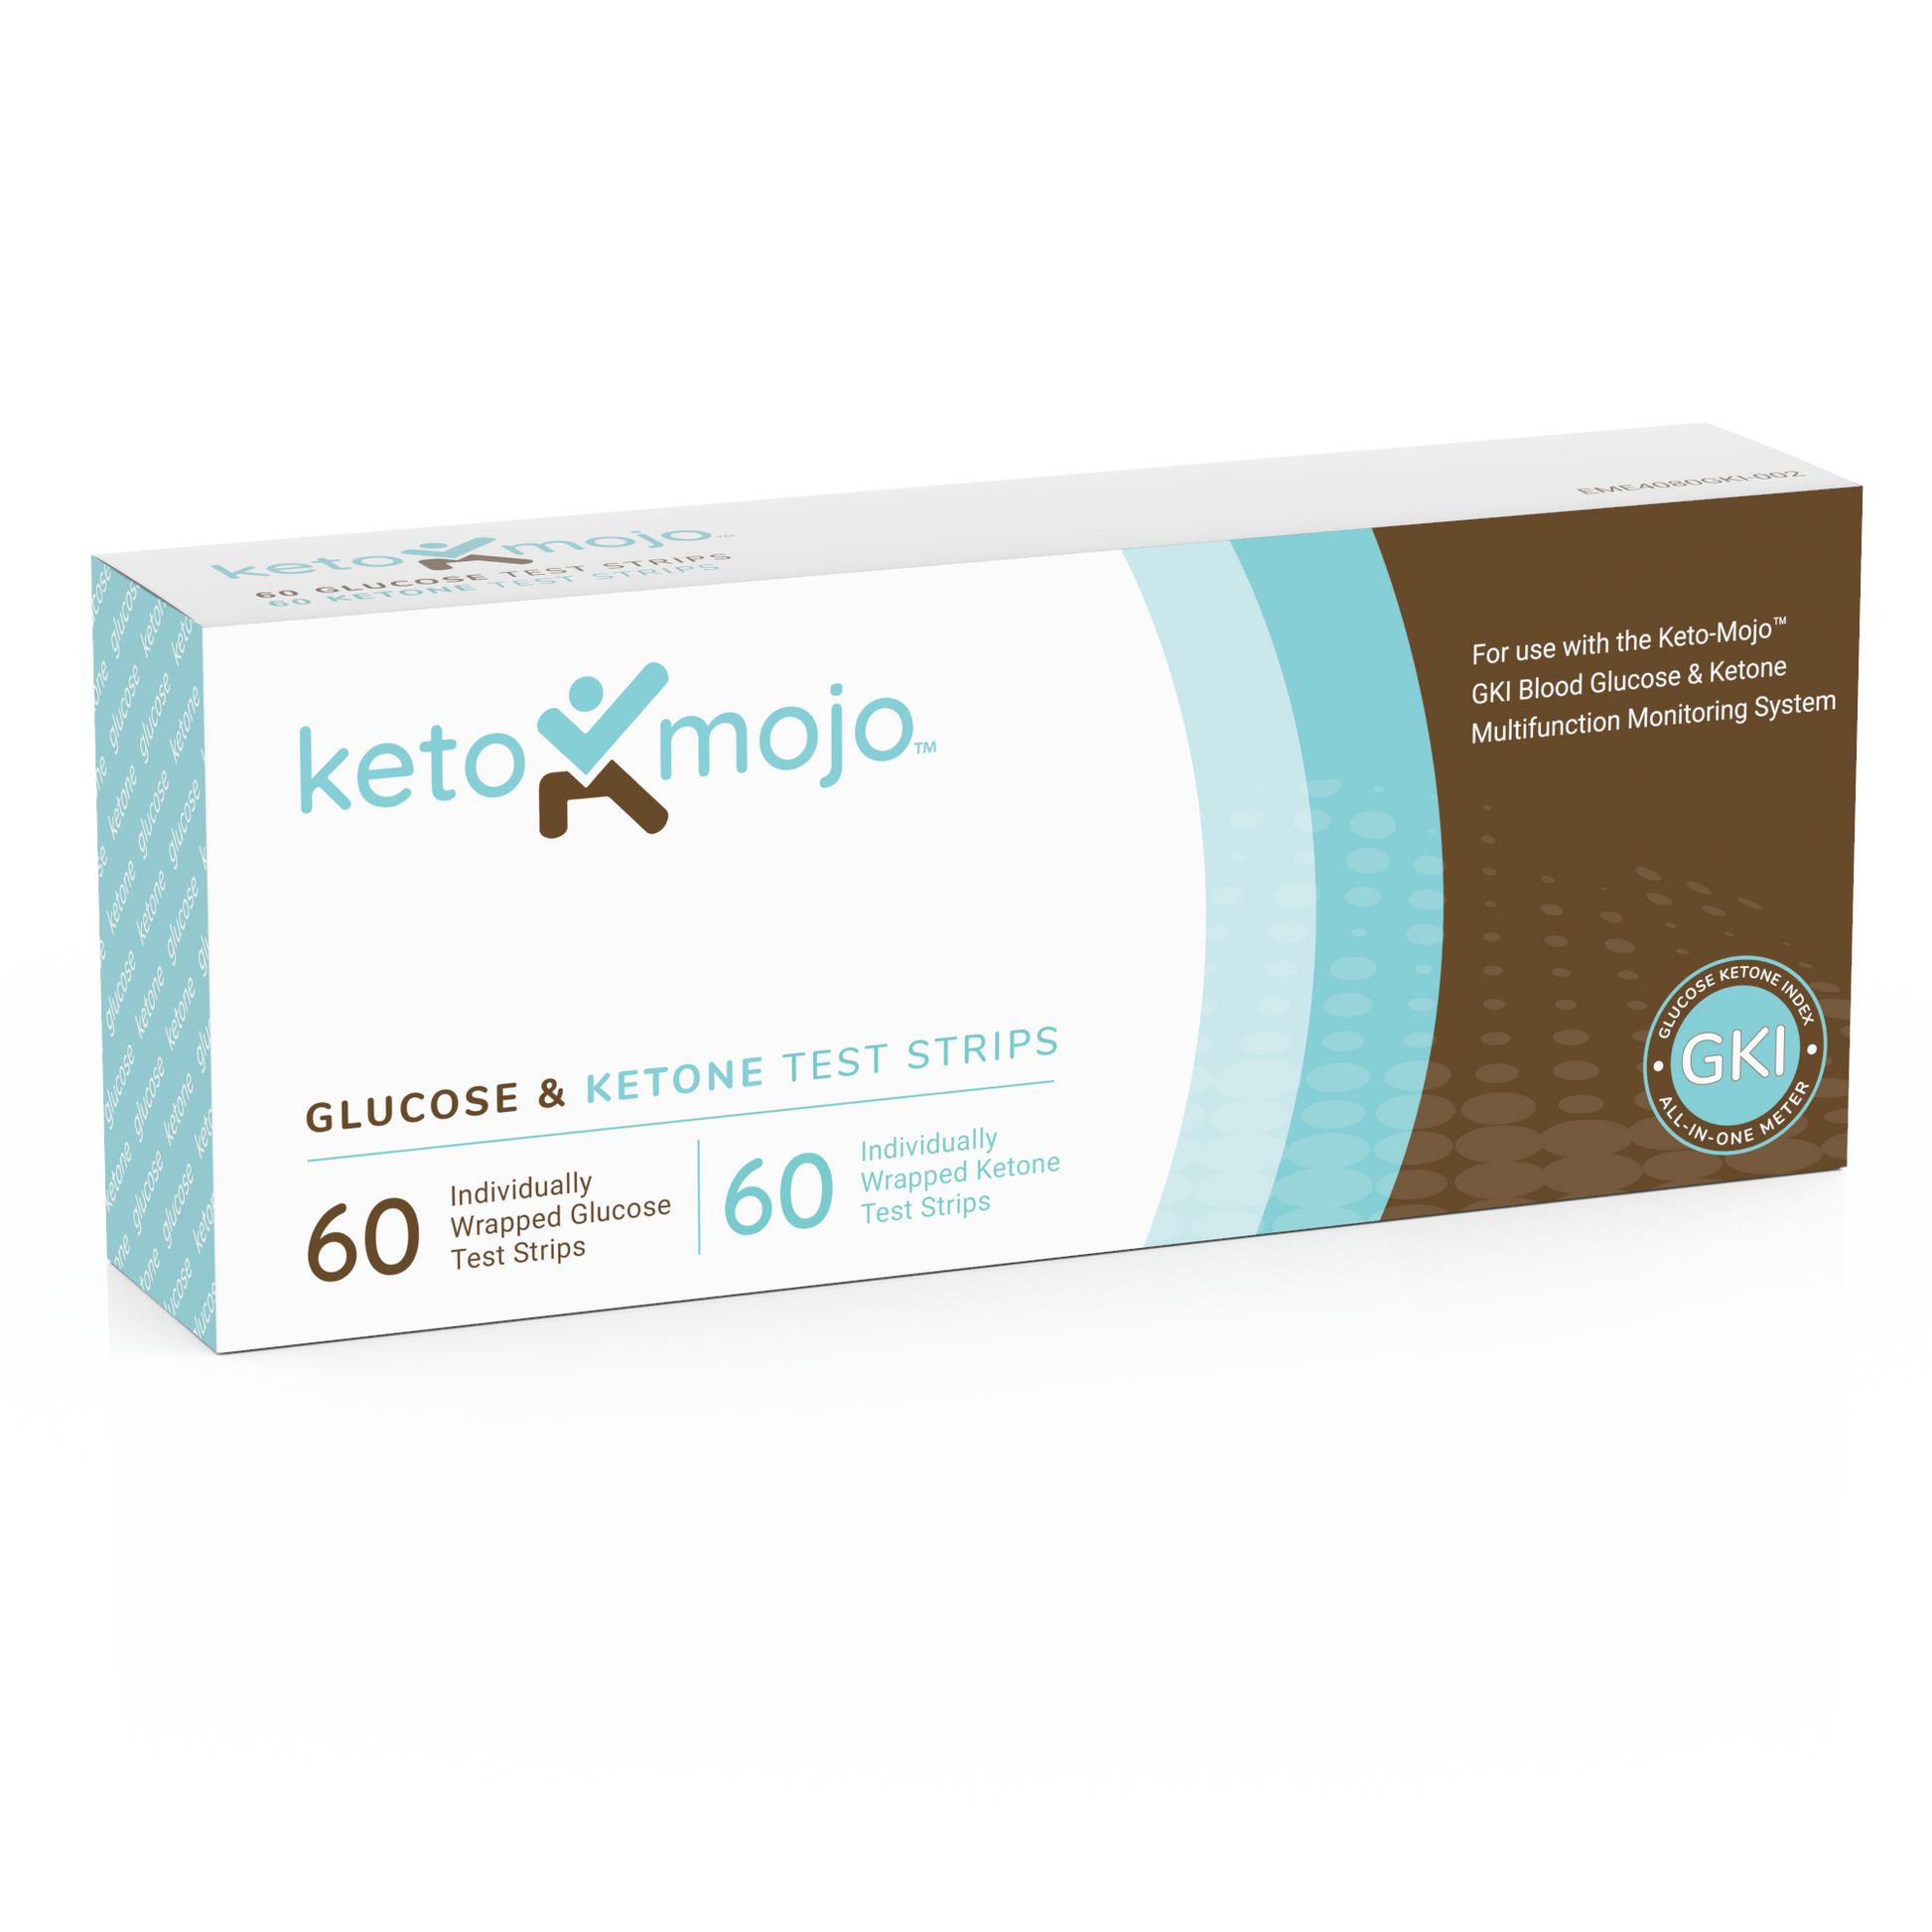 Keto-Mojo GKI-Bluetooth Blood Glucose & Ketone Meter - BASIC